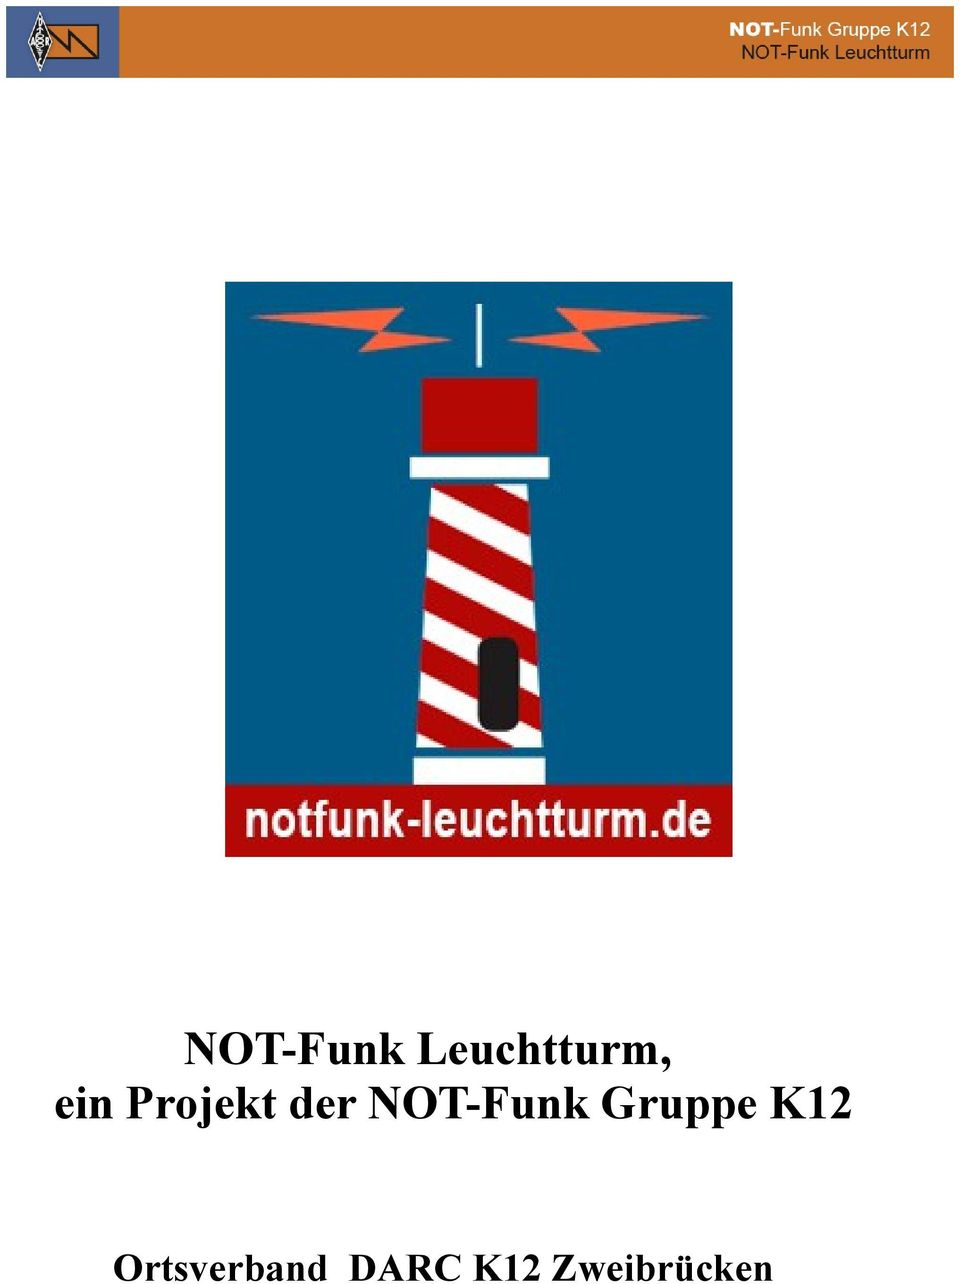 NOT-Funk Gruppe K12